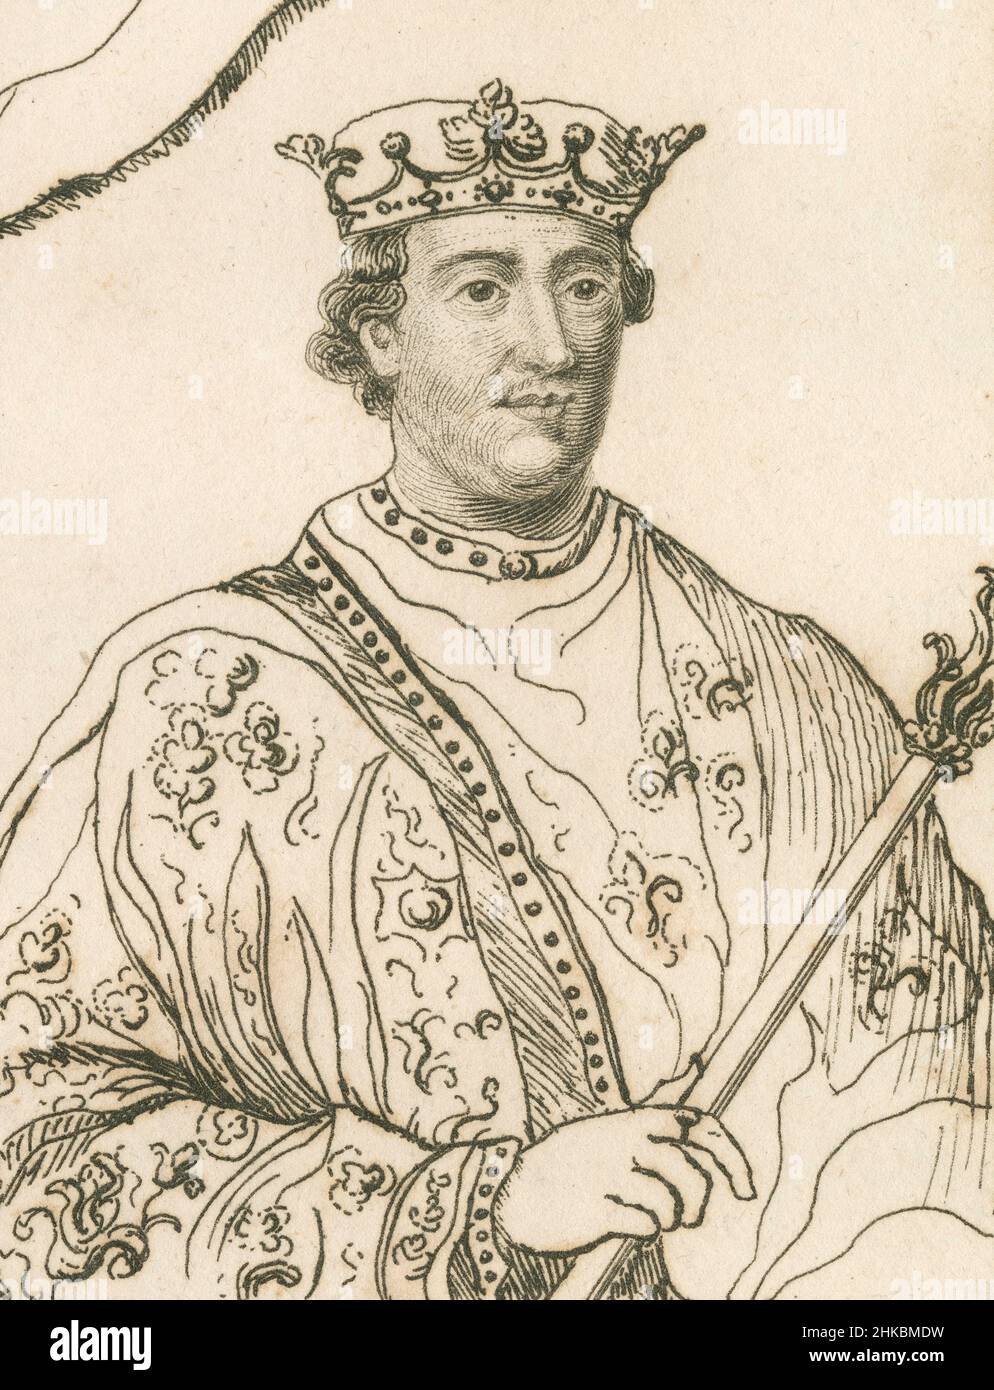 Antiguo alrededor de 1812 grabado del rey Enrique II de Inglaterra. Enrique II (1133-1189) fue rey de Inglaterra desde 1154 hasta su muerte en 1189. FUENTE: GRABADO ORIGINAL Foto de stock